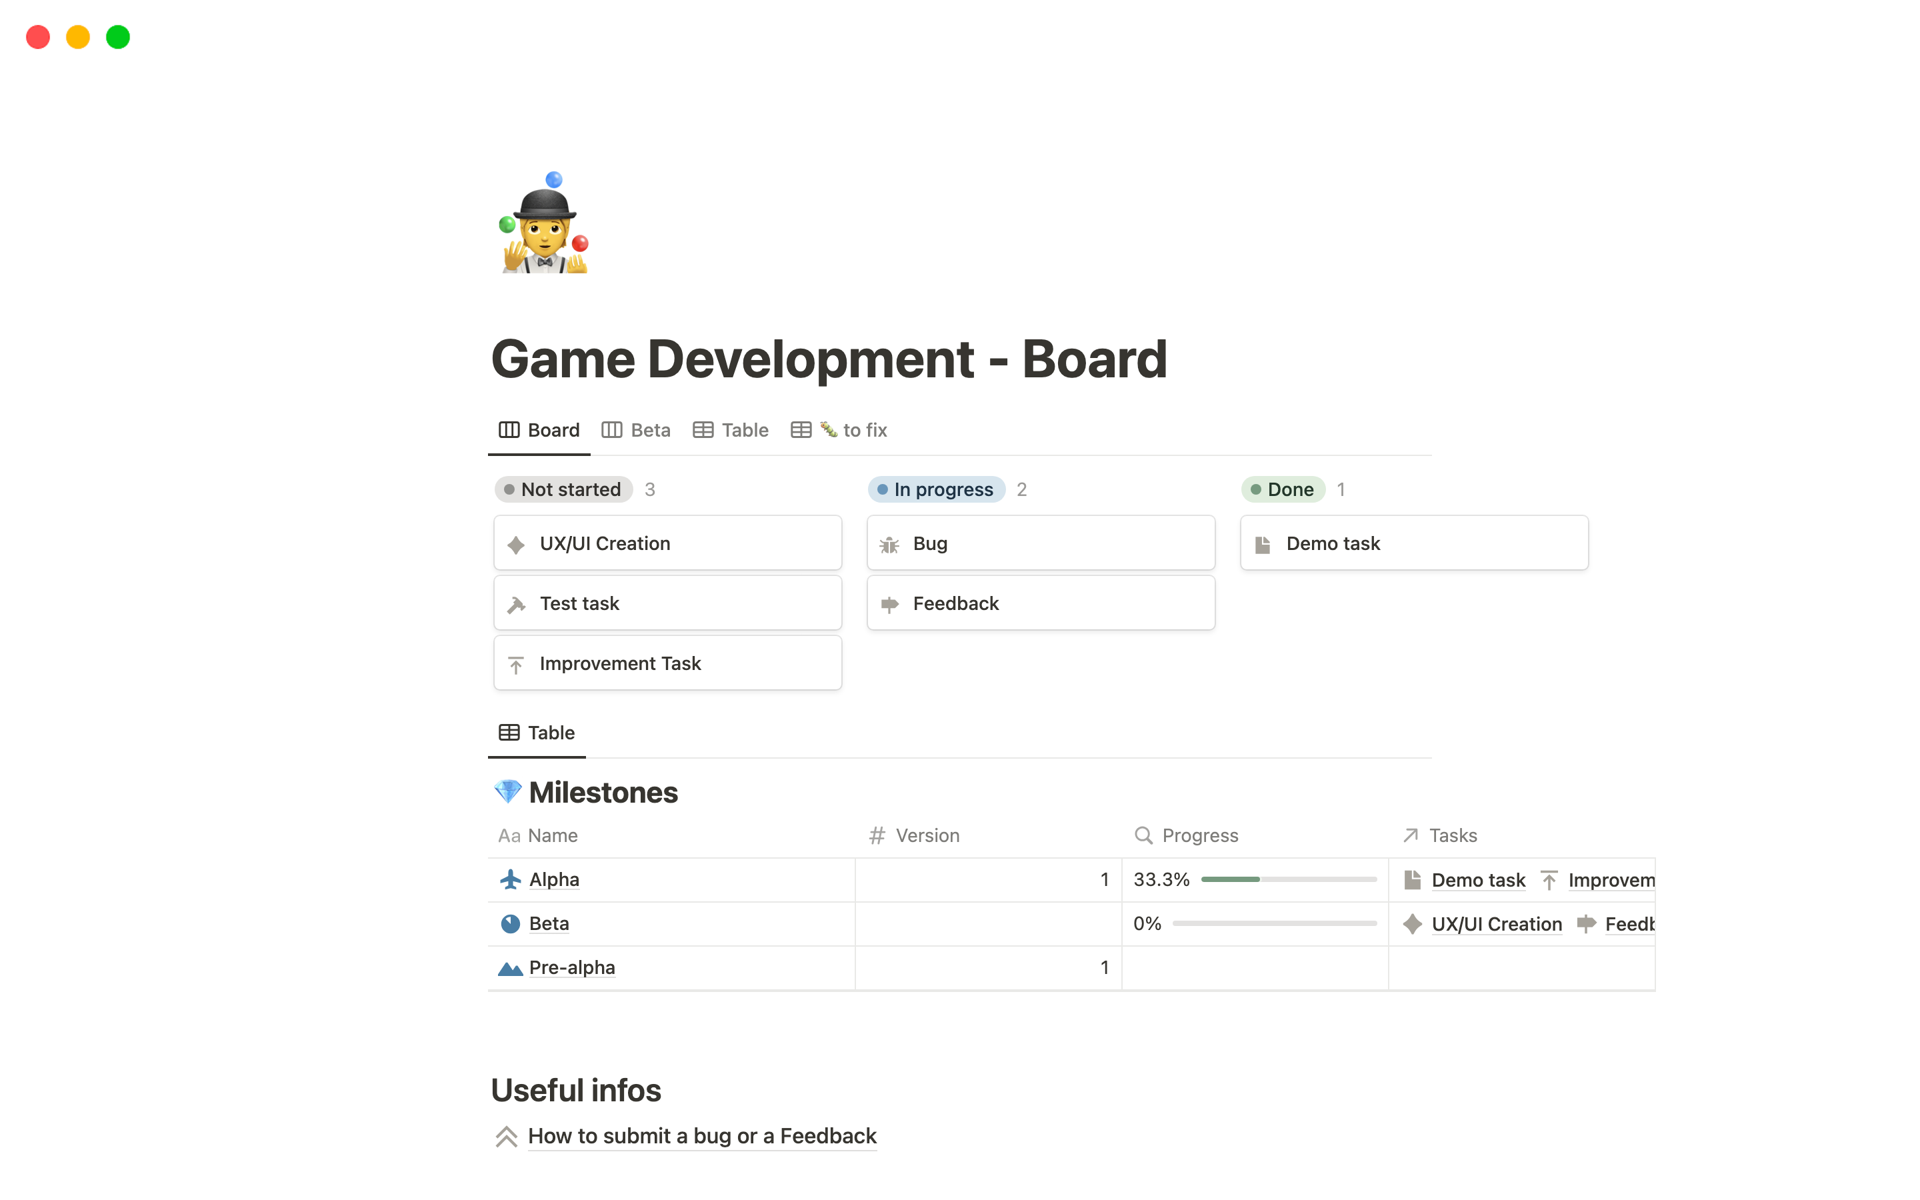 Uma prévia do modelo para Game Development Board